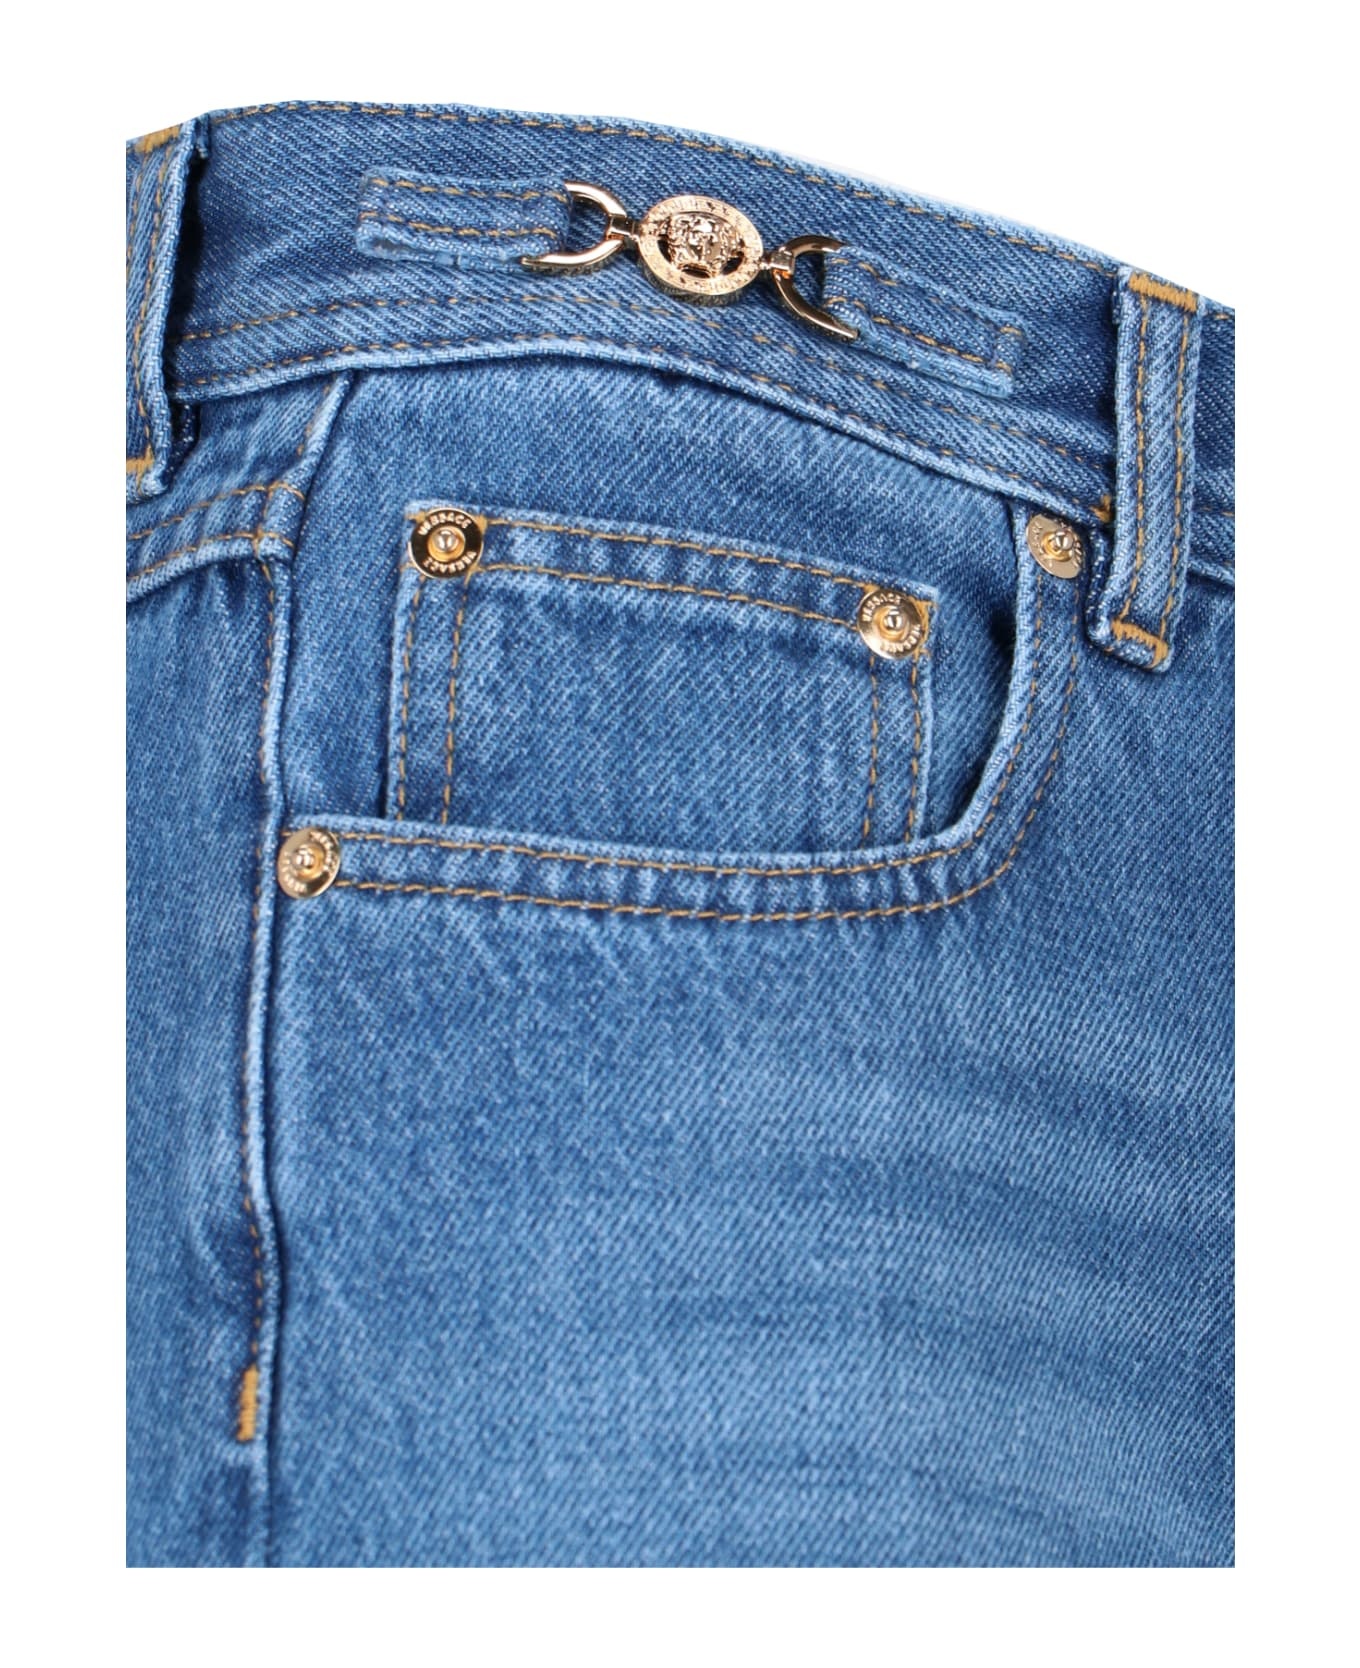 Blue Cotton Jeans - 4